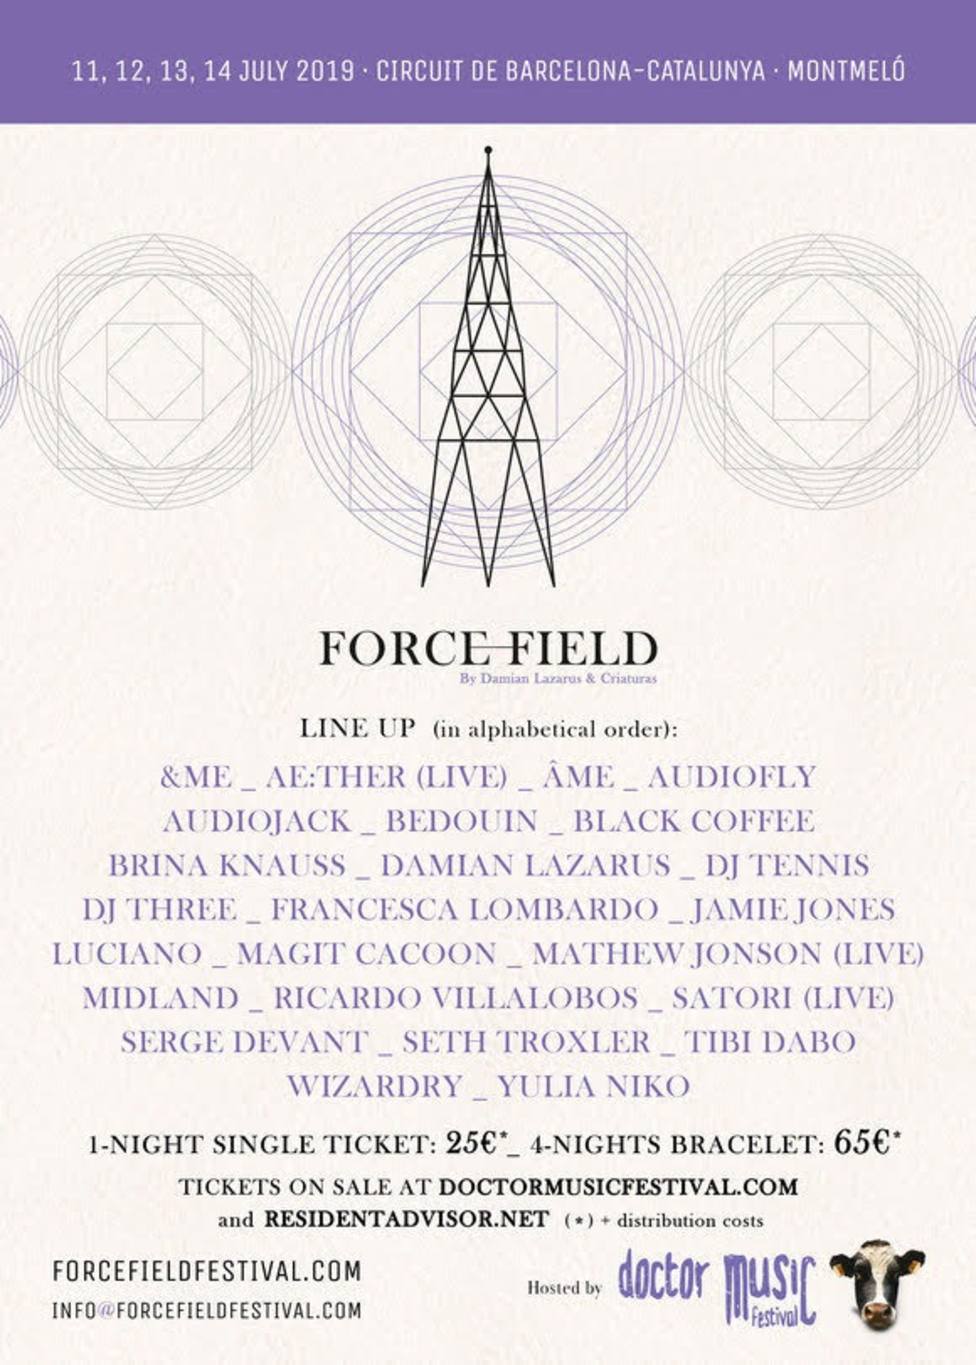 El Doctor Music Festival acogerá la propuesta electrónica de Damian Lazarus Force Field